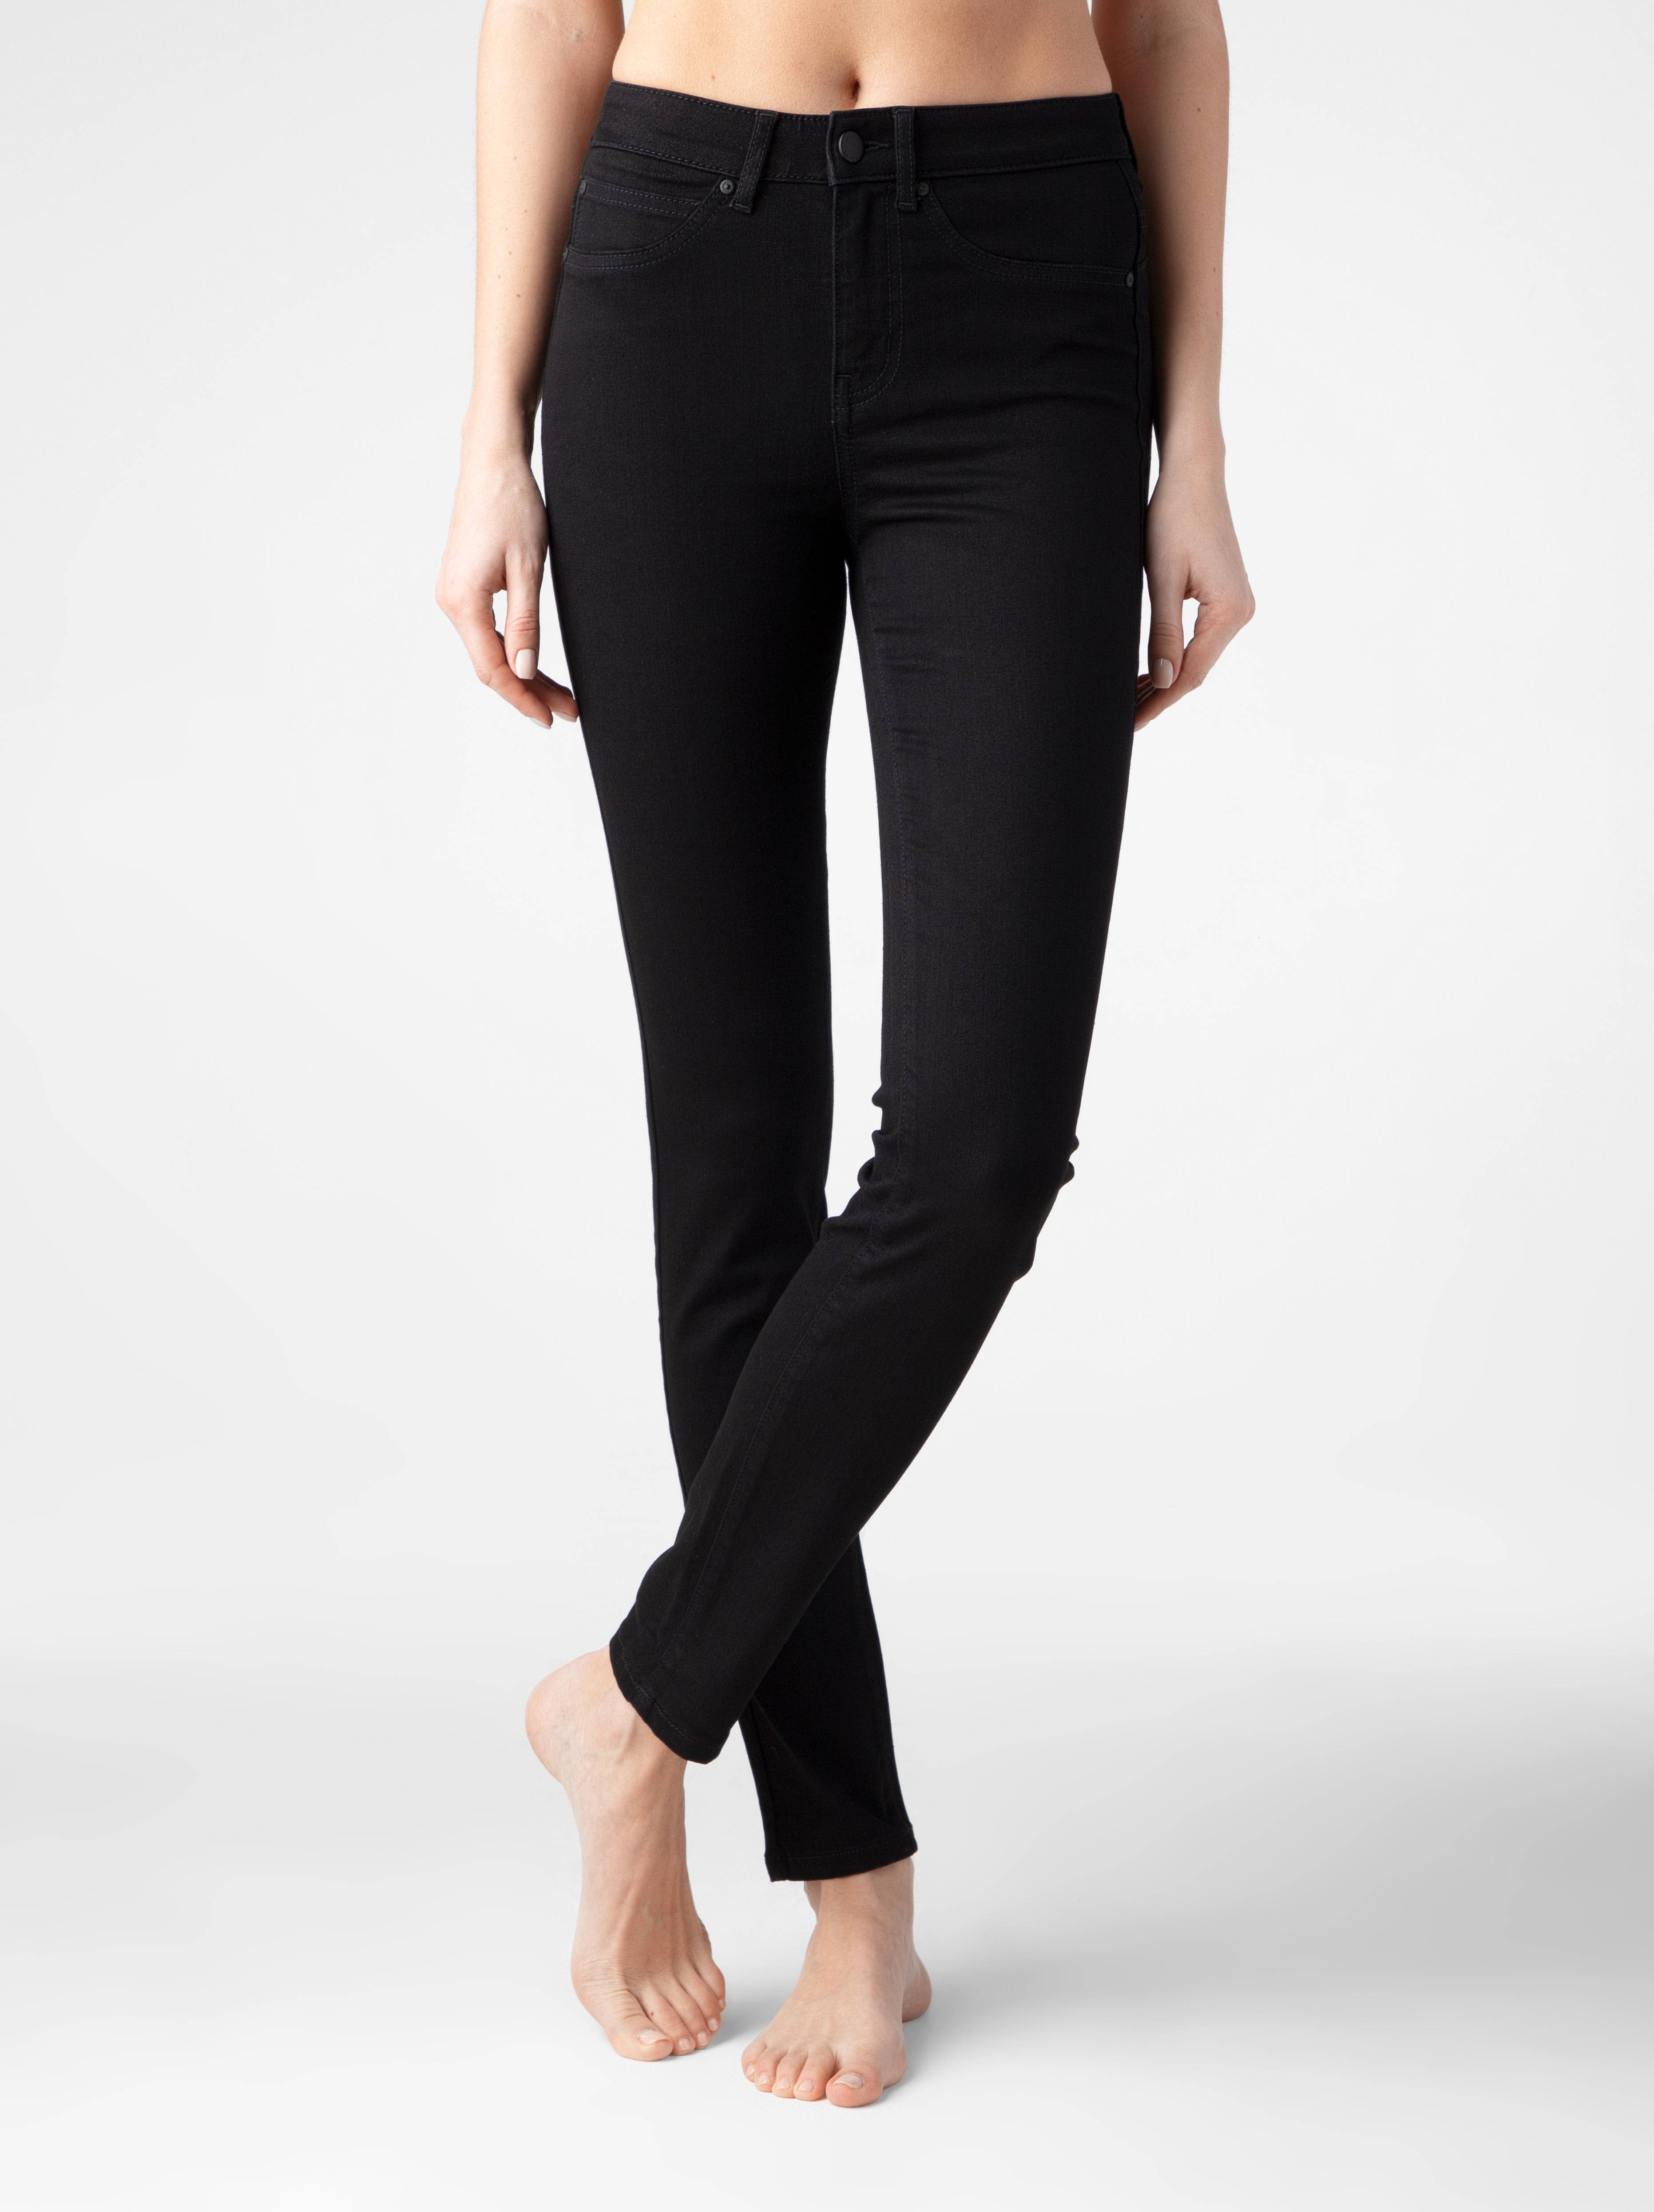 Моделирующие джинсы skinny с высокой посадкой CON-285 Conte ⭐️, цвет deep black, размер 164-102 - фото 1